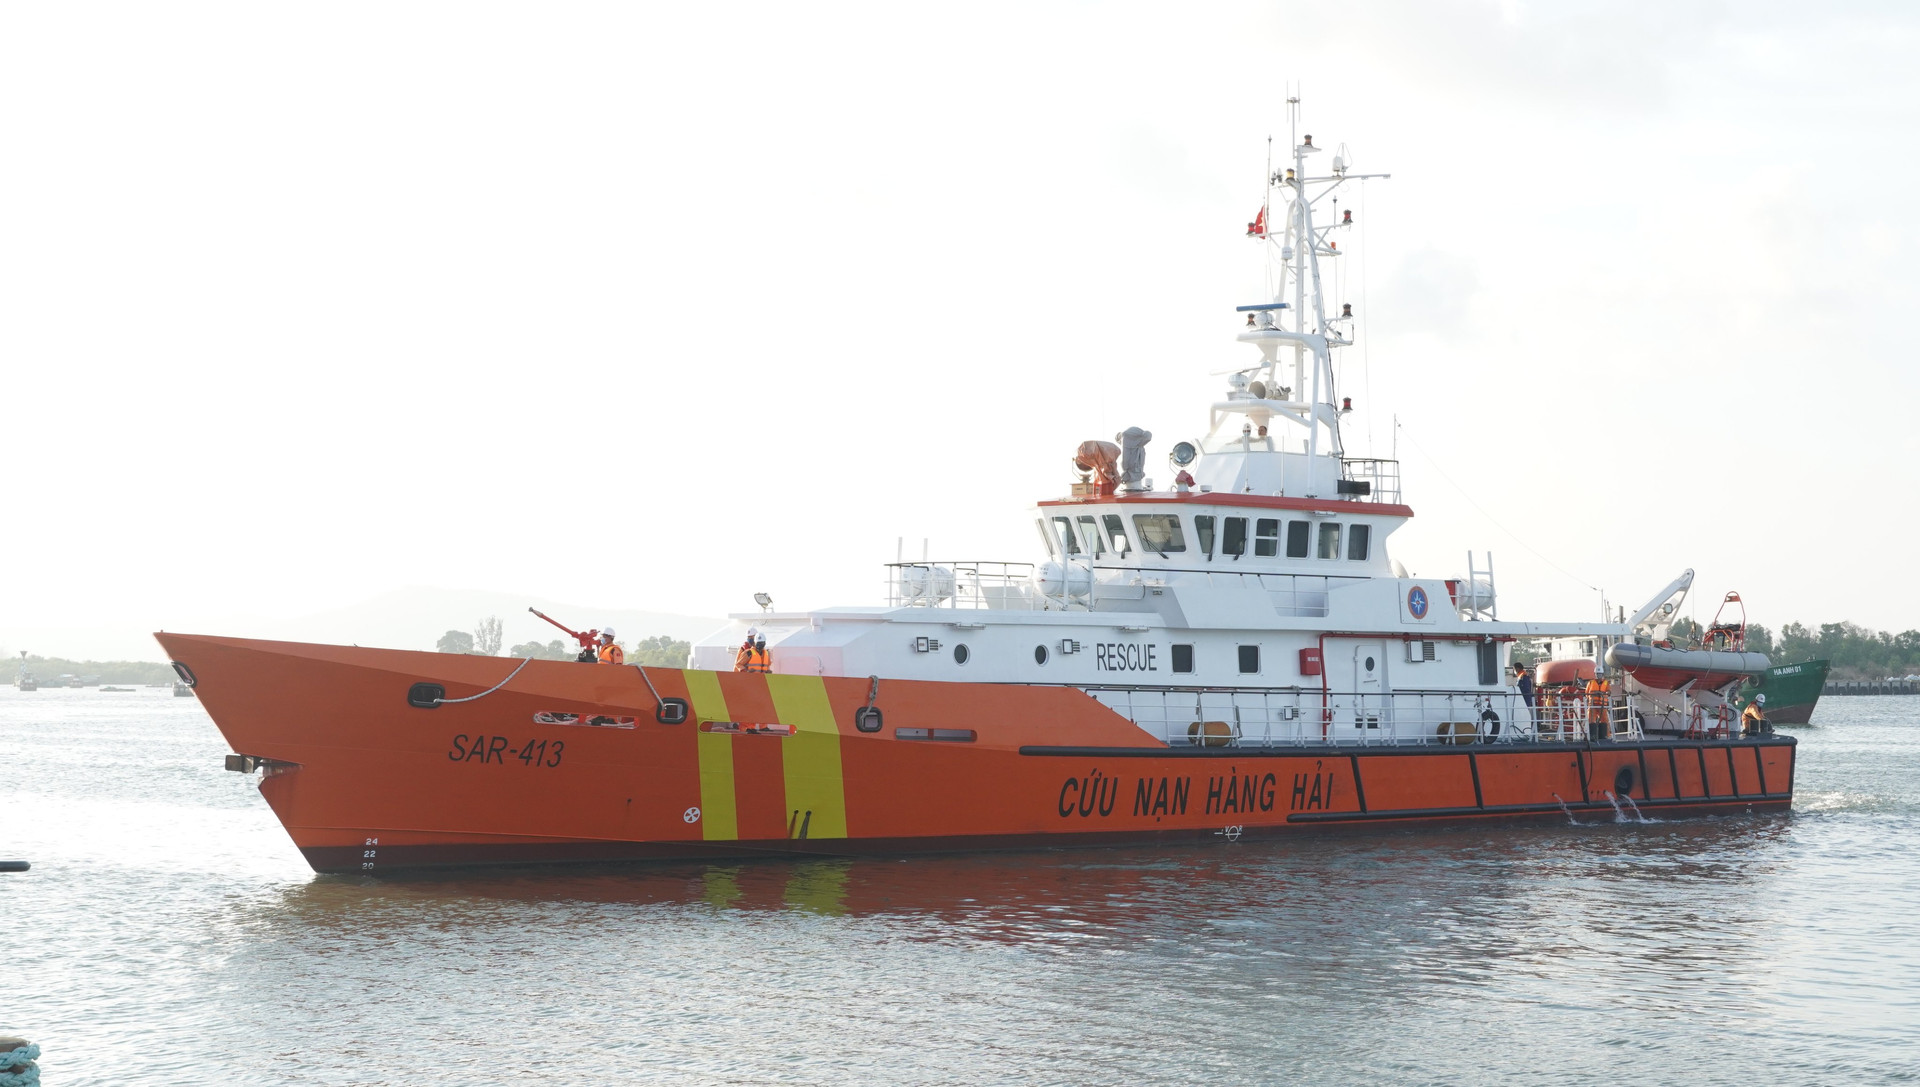 Tàu Sar 413 đã cập cảng an toàn và bàn giao toàn bộ thuyền viên được cứu cho các cơ quan chức năng.